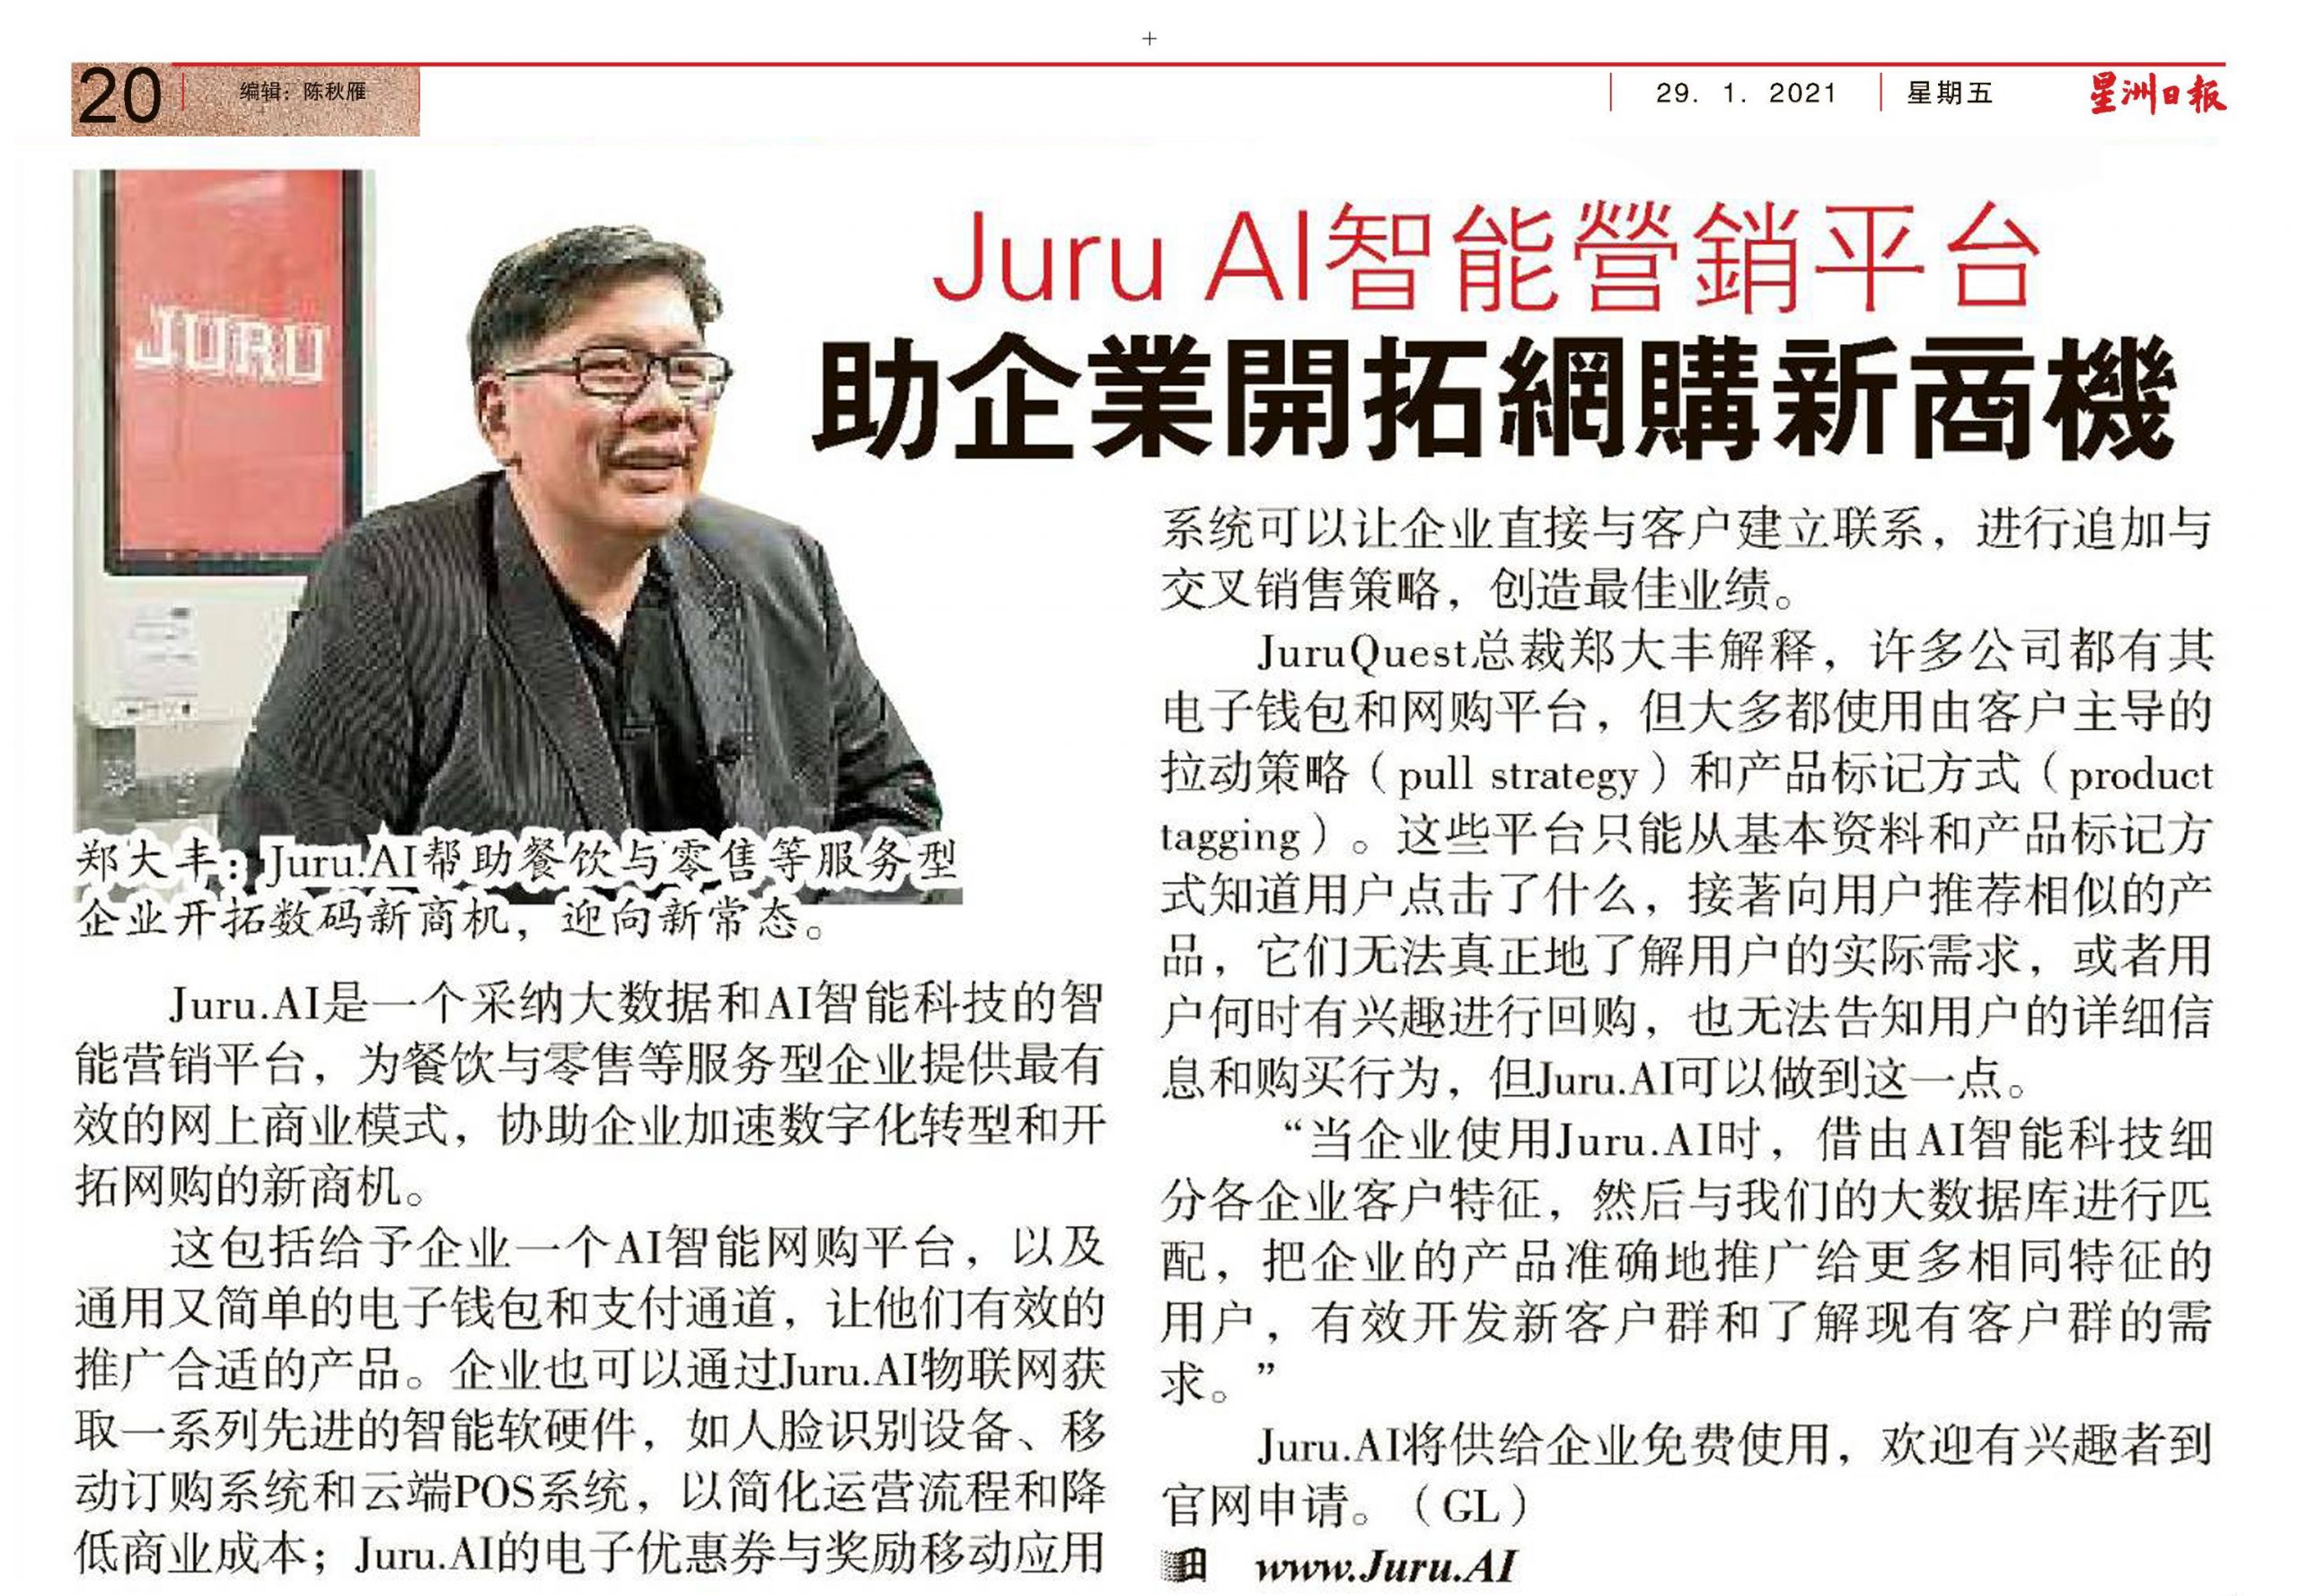 JURU AI Article in Sin Chew Newspaper